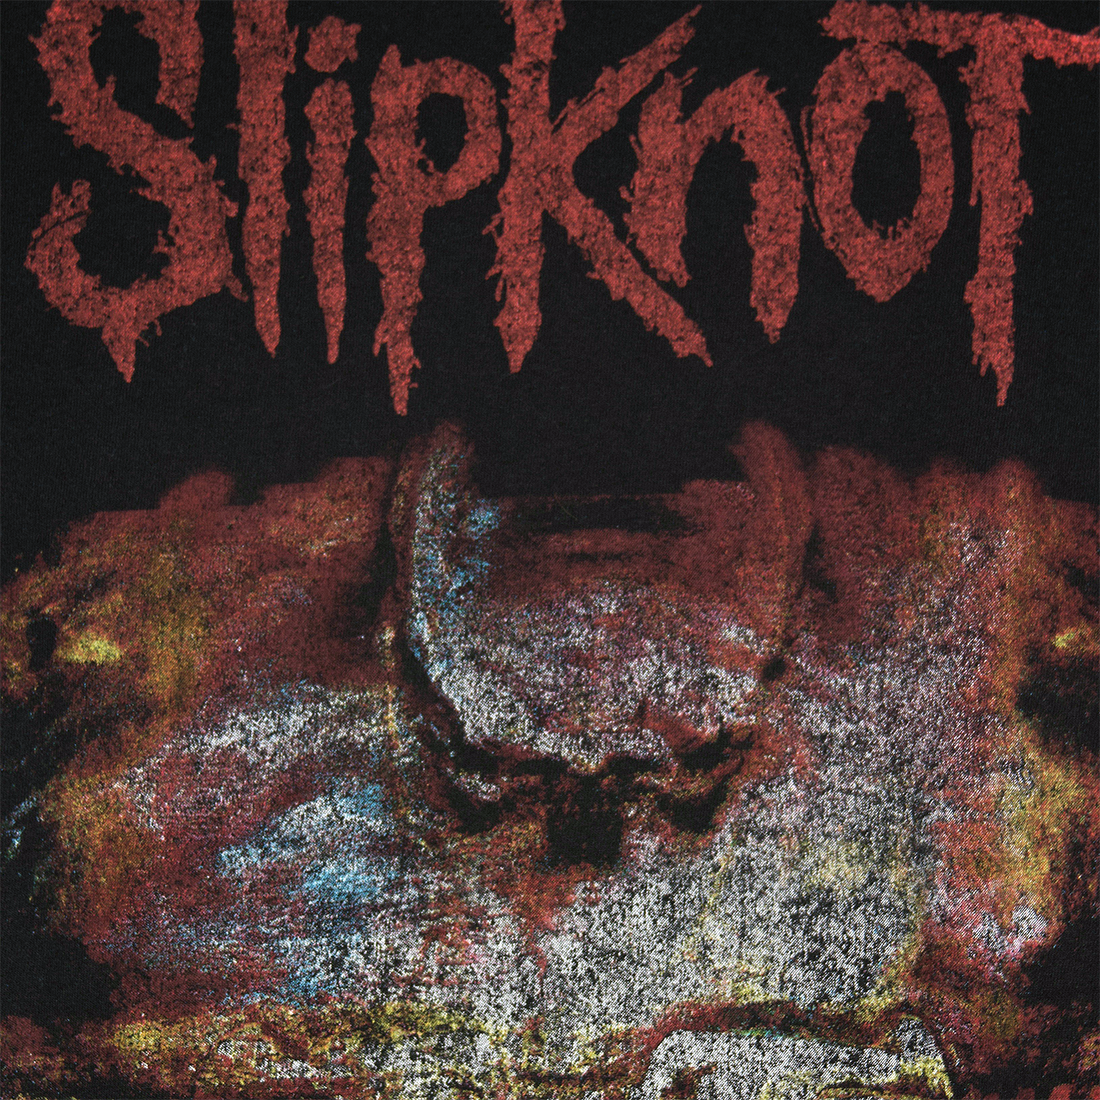 Slipknot - Subliminal Verses